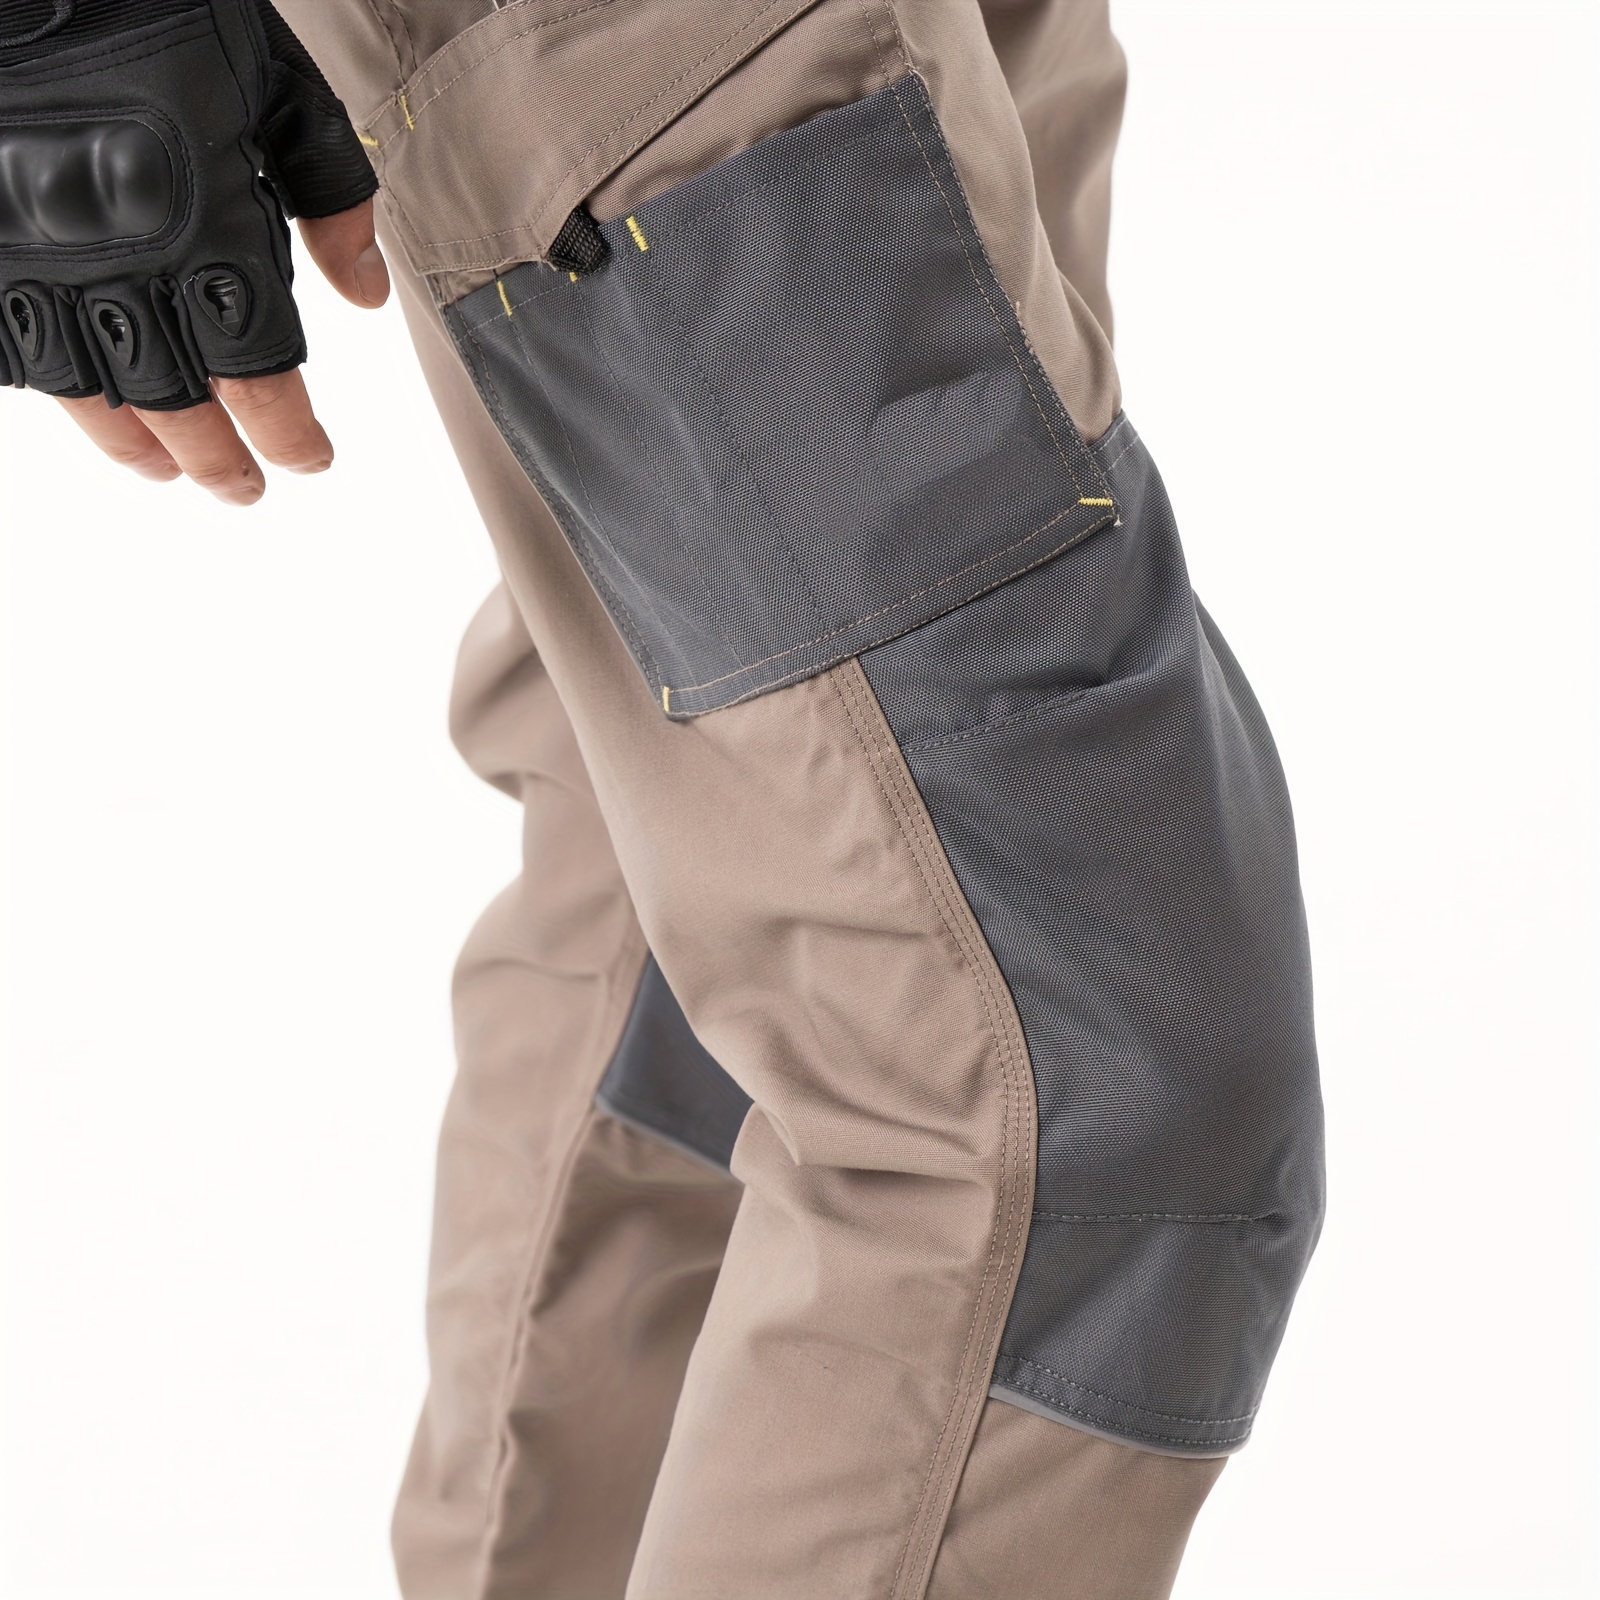 Pantalones Trabajo Seguridad Múltiples Bolsillos Gruesos - Temu